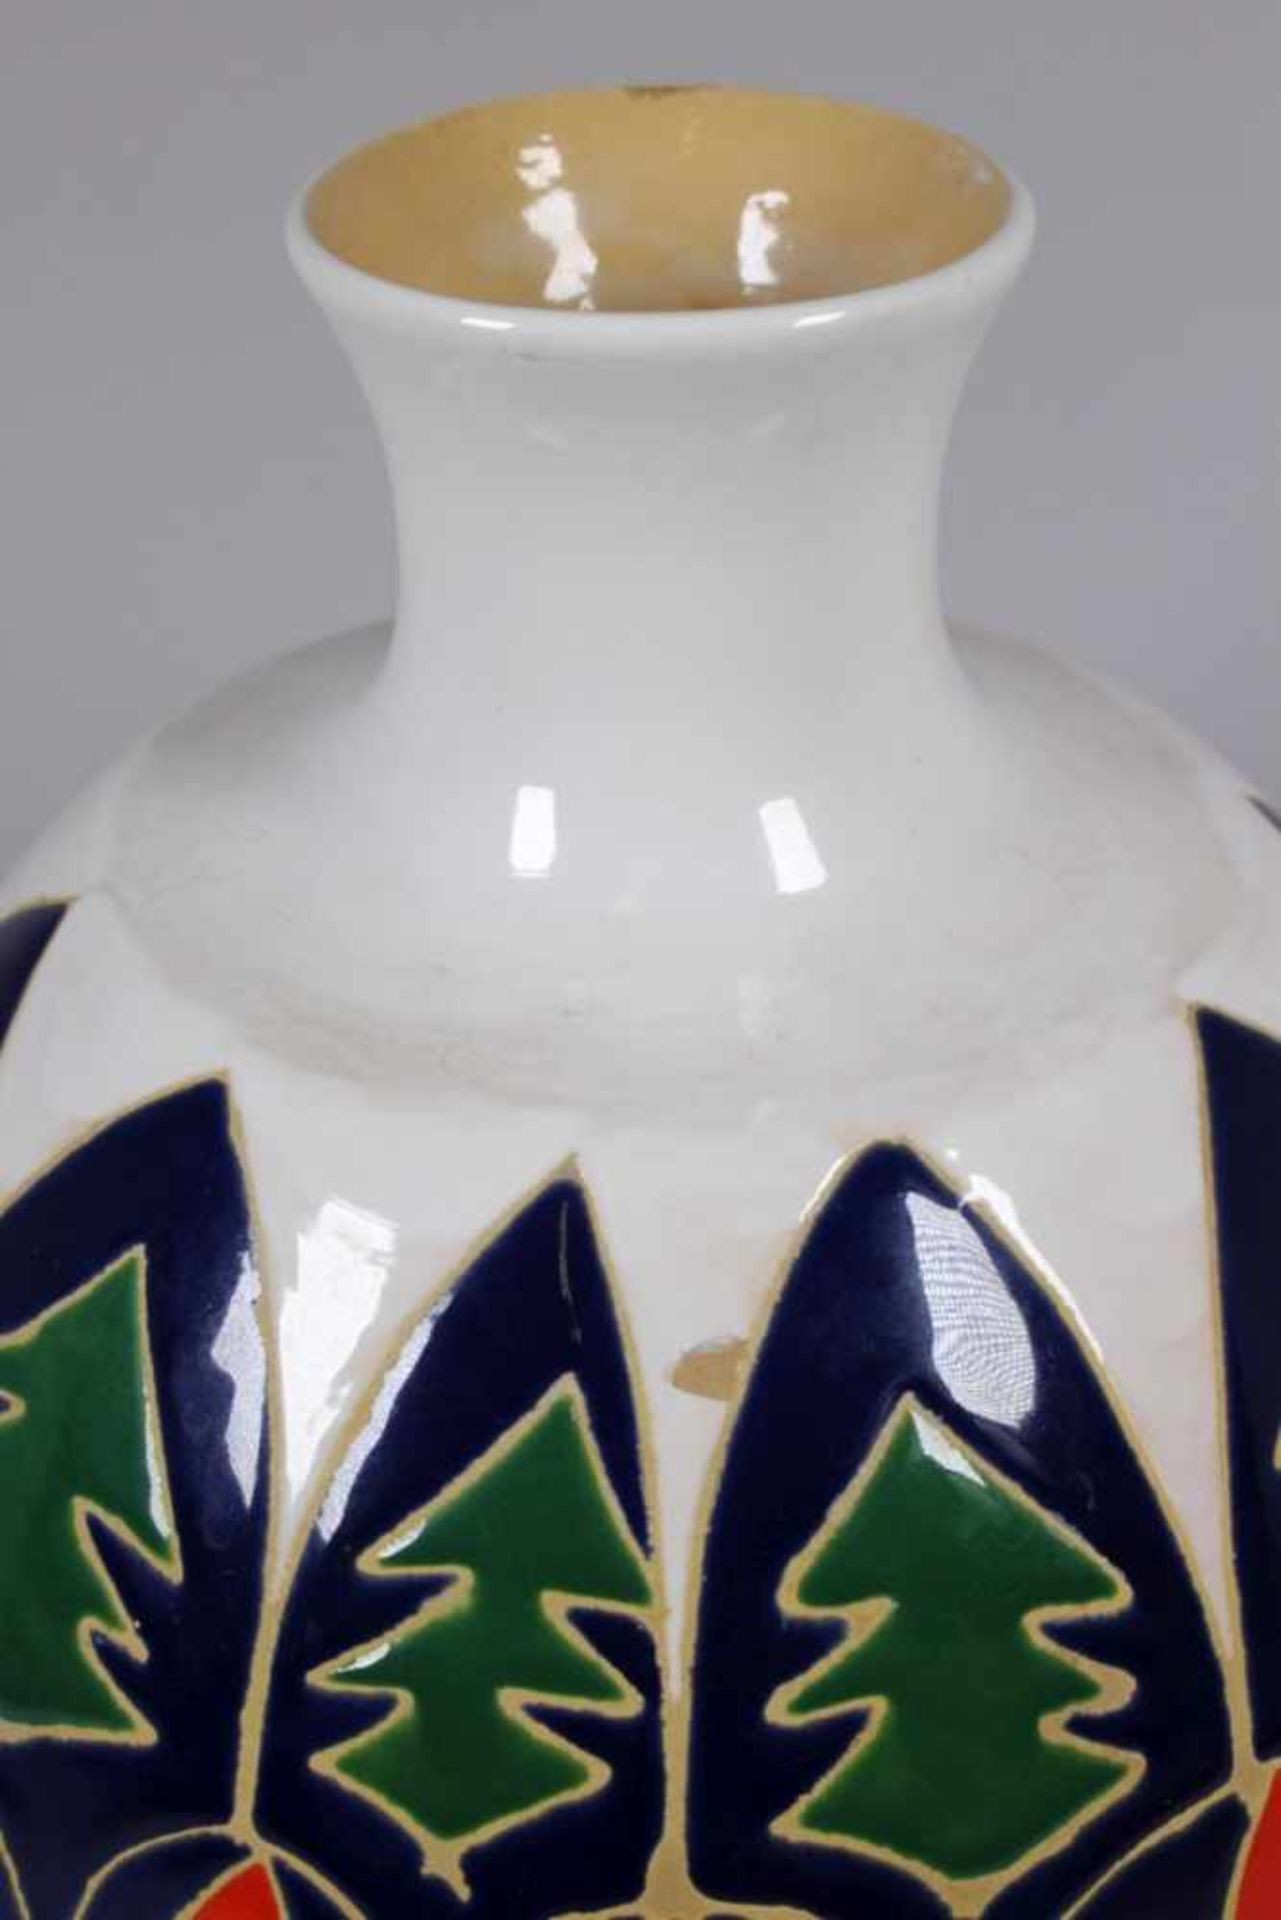 Keramik-Ziervase, Italien, 70er Jahre, runder Stand, bauchiger Korpus, abgesetzter,eingezogener Hals - Bild 3 aus 5